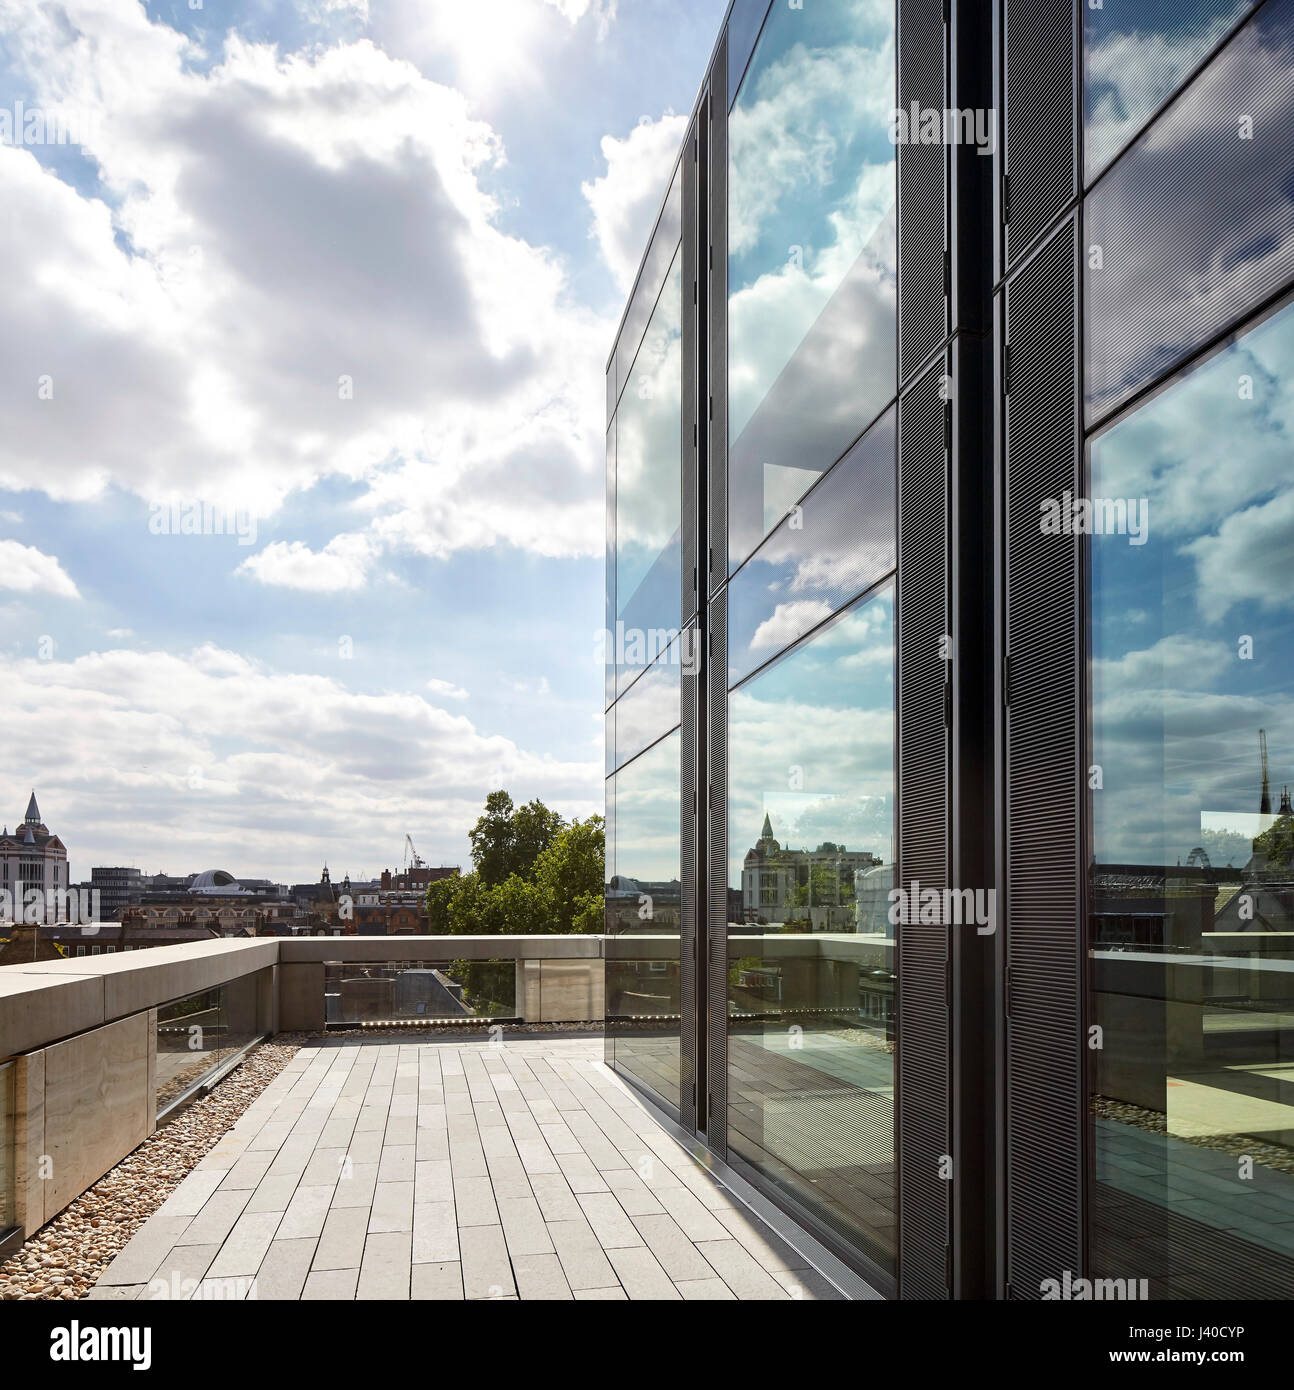 Perspektive auf der obersten Etage mit Balkon Verglasung. Chancery Lane, London, Vereinigtes Königreich. Architekt: Bennetts Associates Architects, 2015. Stockfoto